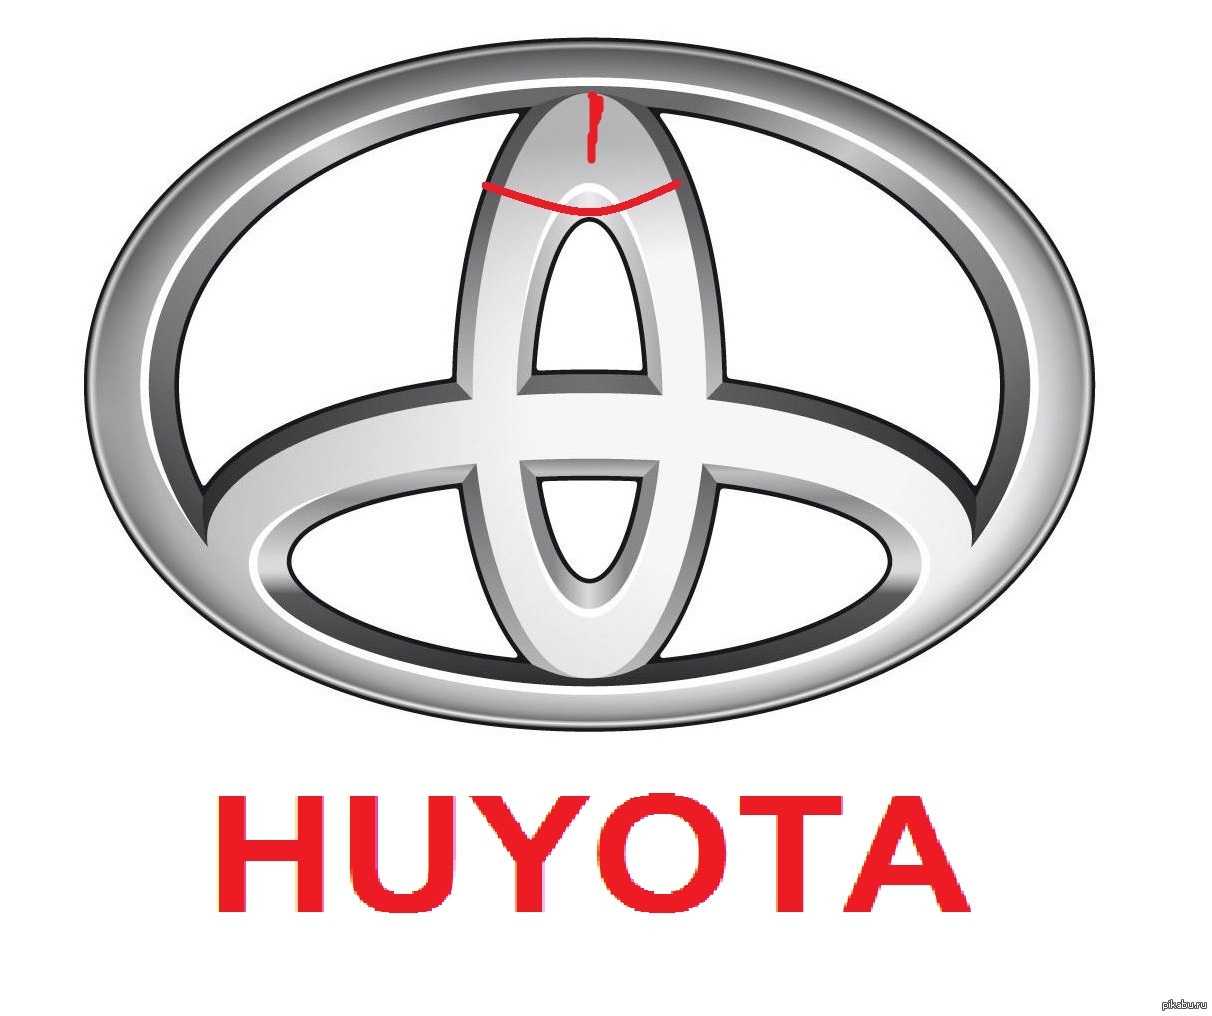 Слоган тойоты. Toyota Управляй мечтой. Тойота слоган. Прикольные эмблемы Тойота. Логотип Тойота Управляй мечтой.